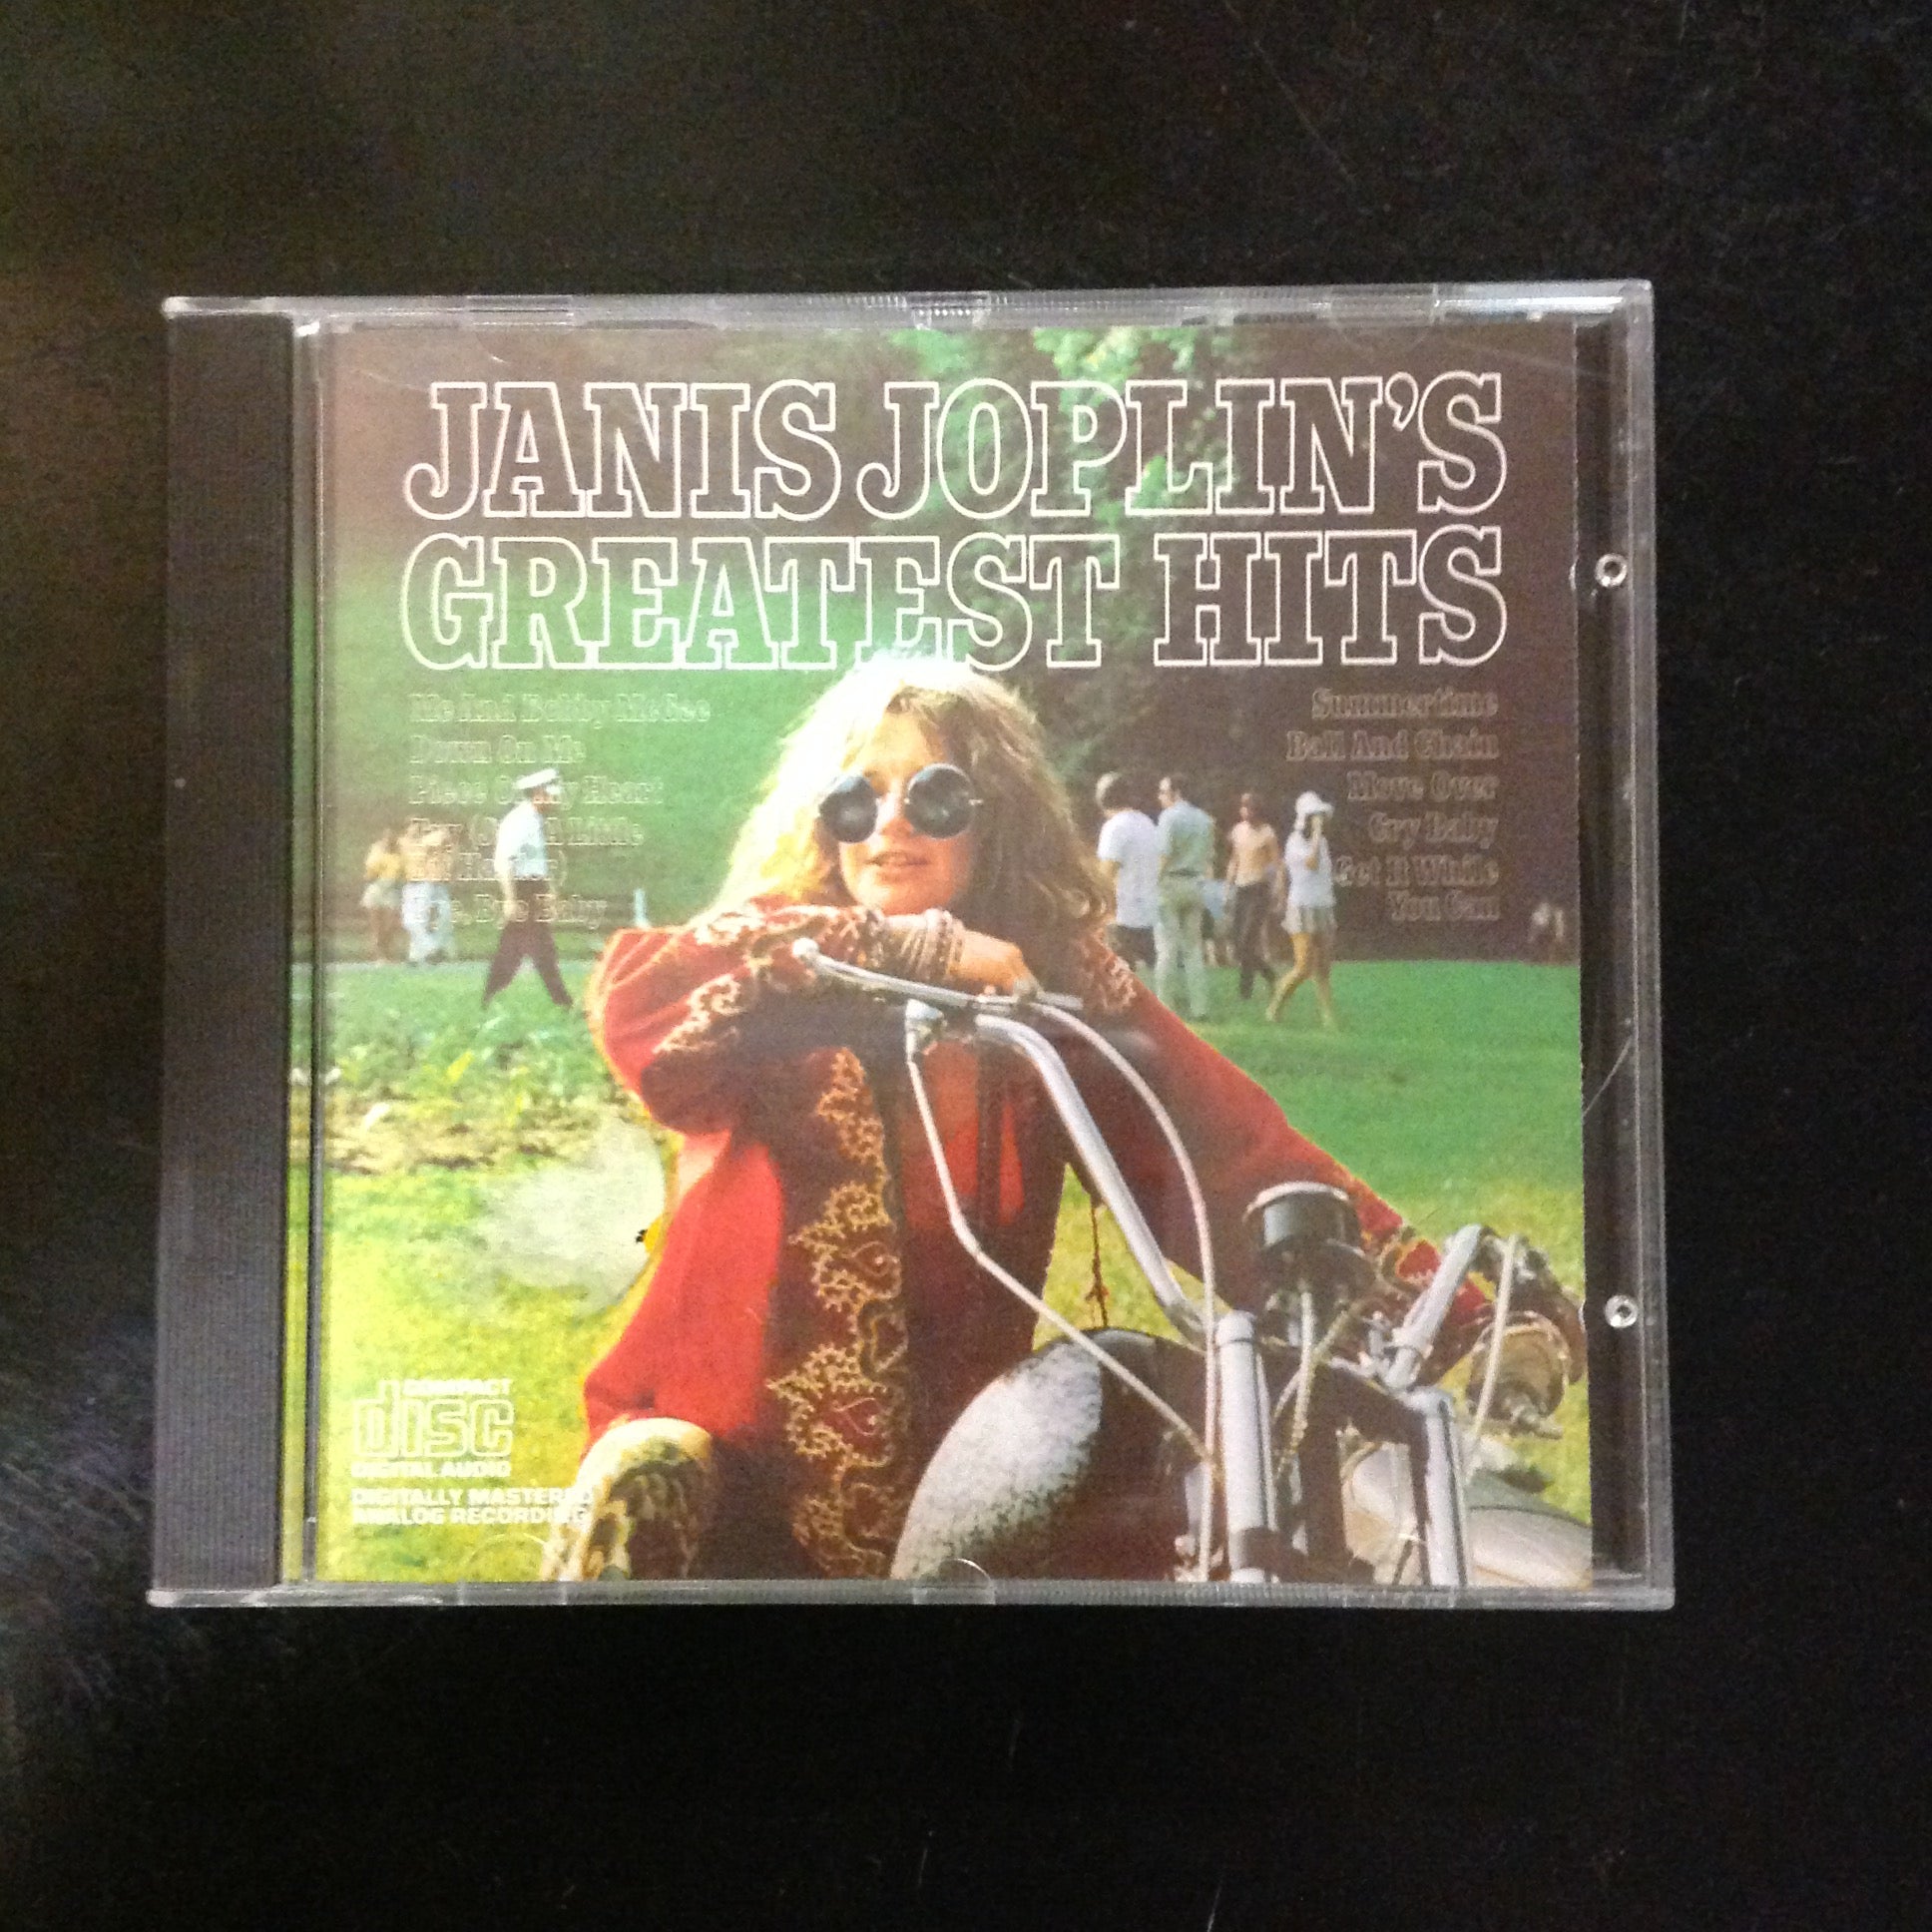 CD Janis Joplin's Greatest Hits CK 32168 Blues Rock Woodstock Psychedelic